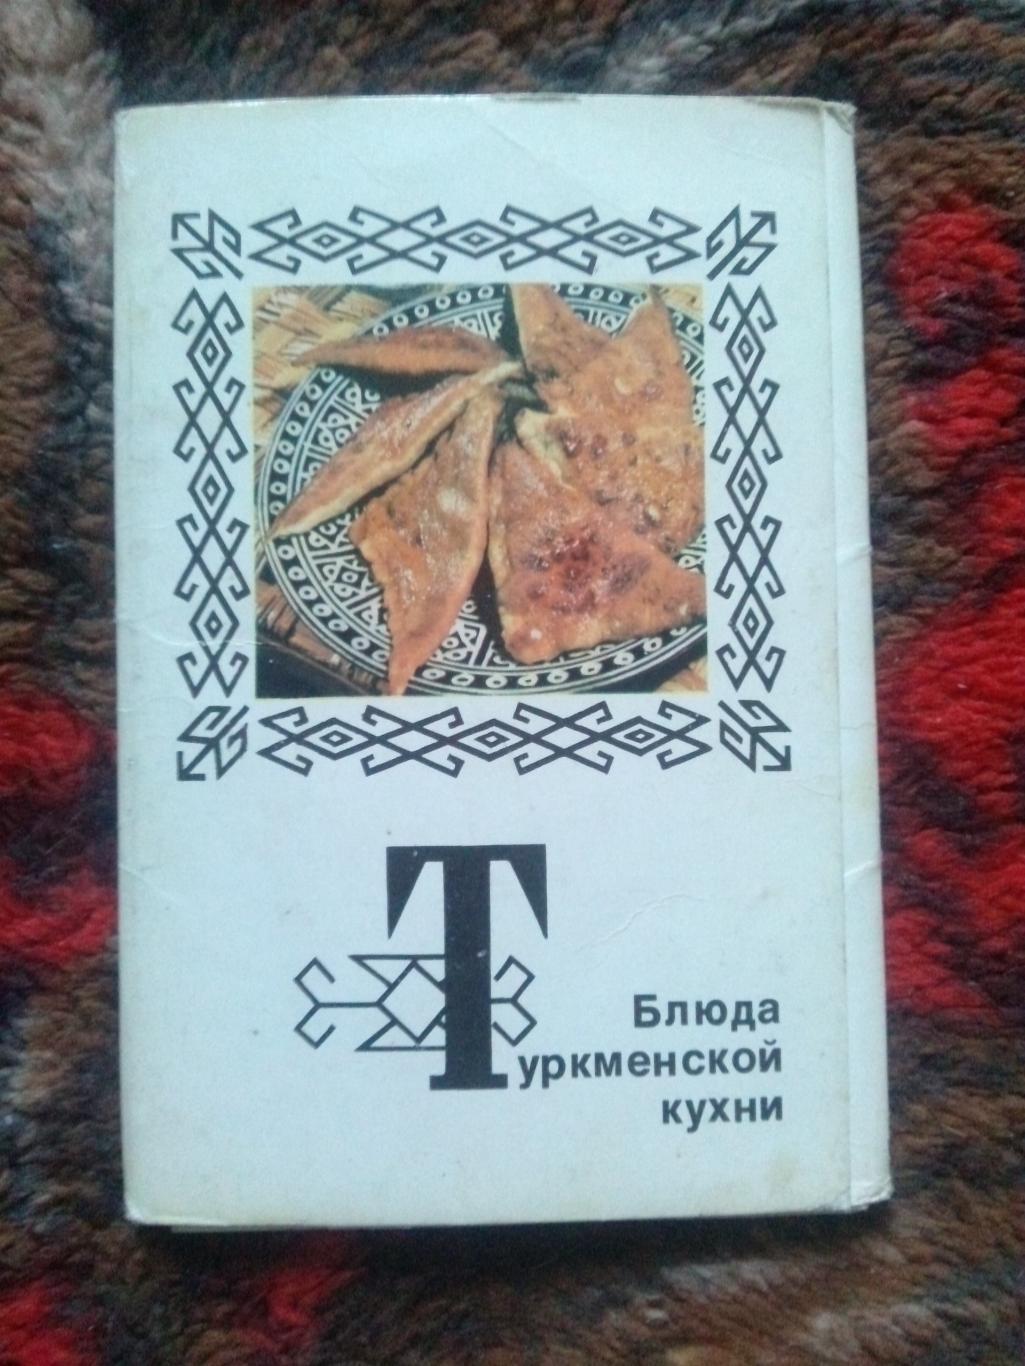 Блюда туркменской кухни 1976 г. полный набор - 15 открыток (Кулинария рецепты)